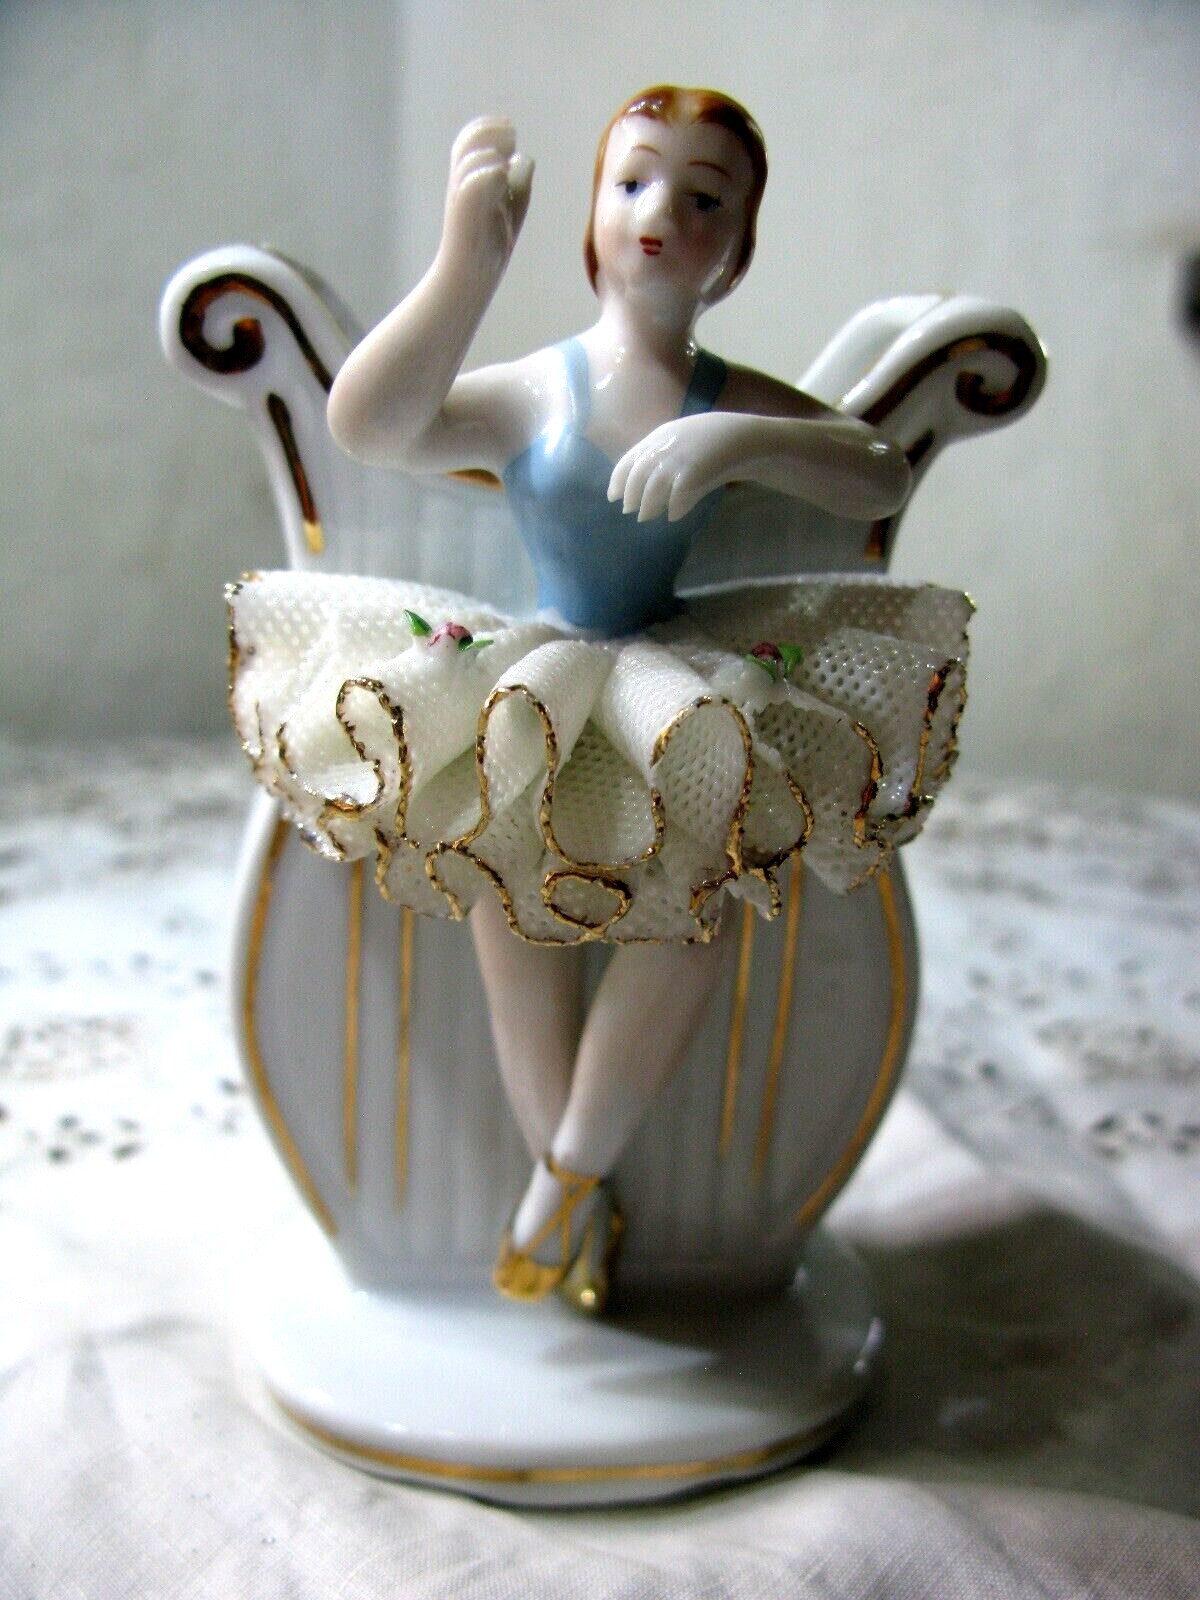 Vintage UCACGO Ceramic Porcelain Ornate Vase Ballet Dancer Figurine Japan 1950s?